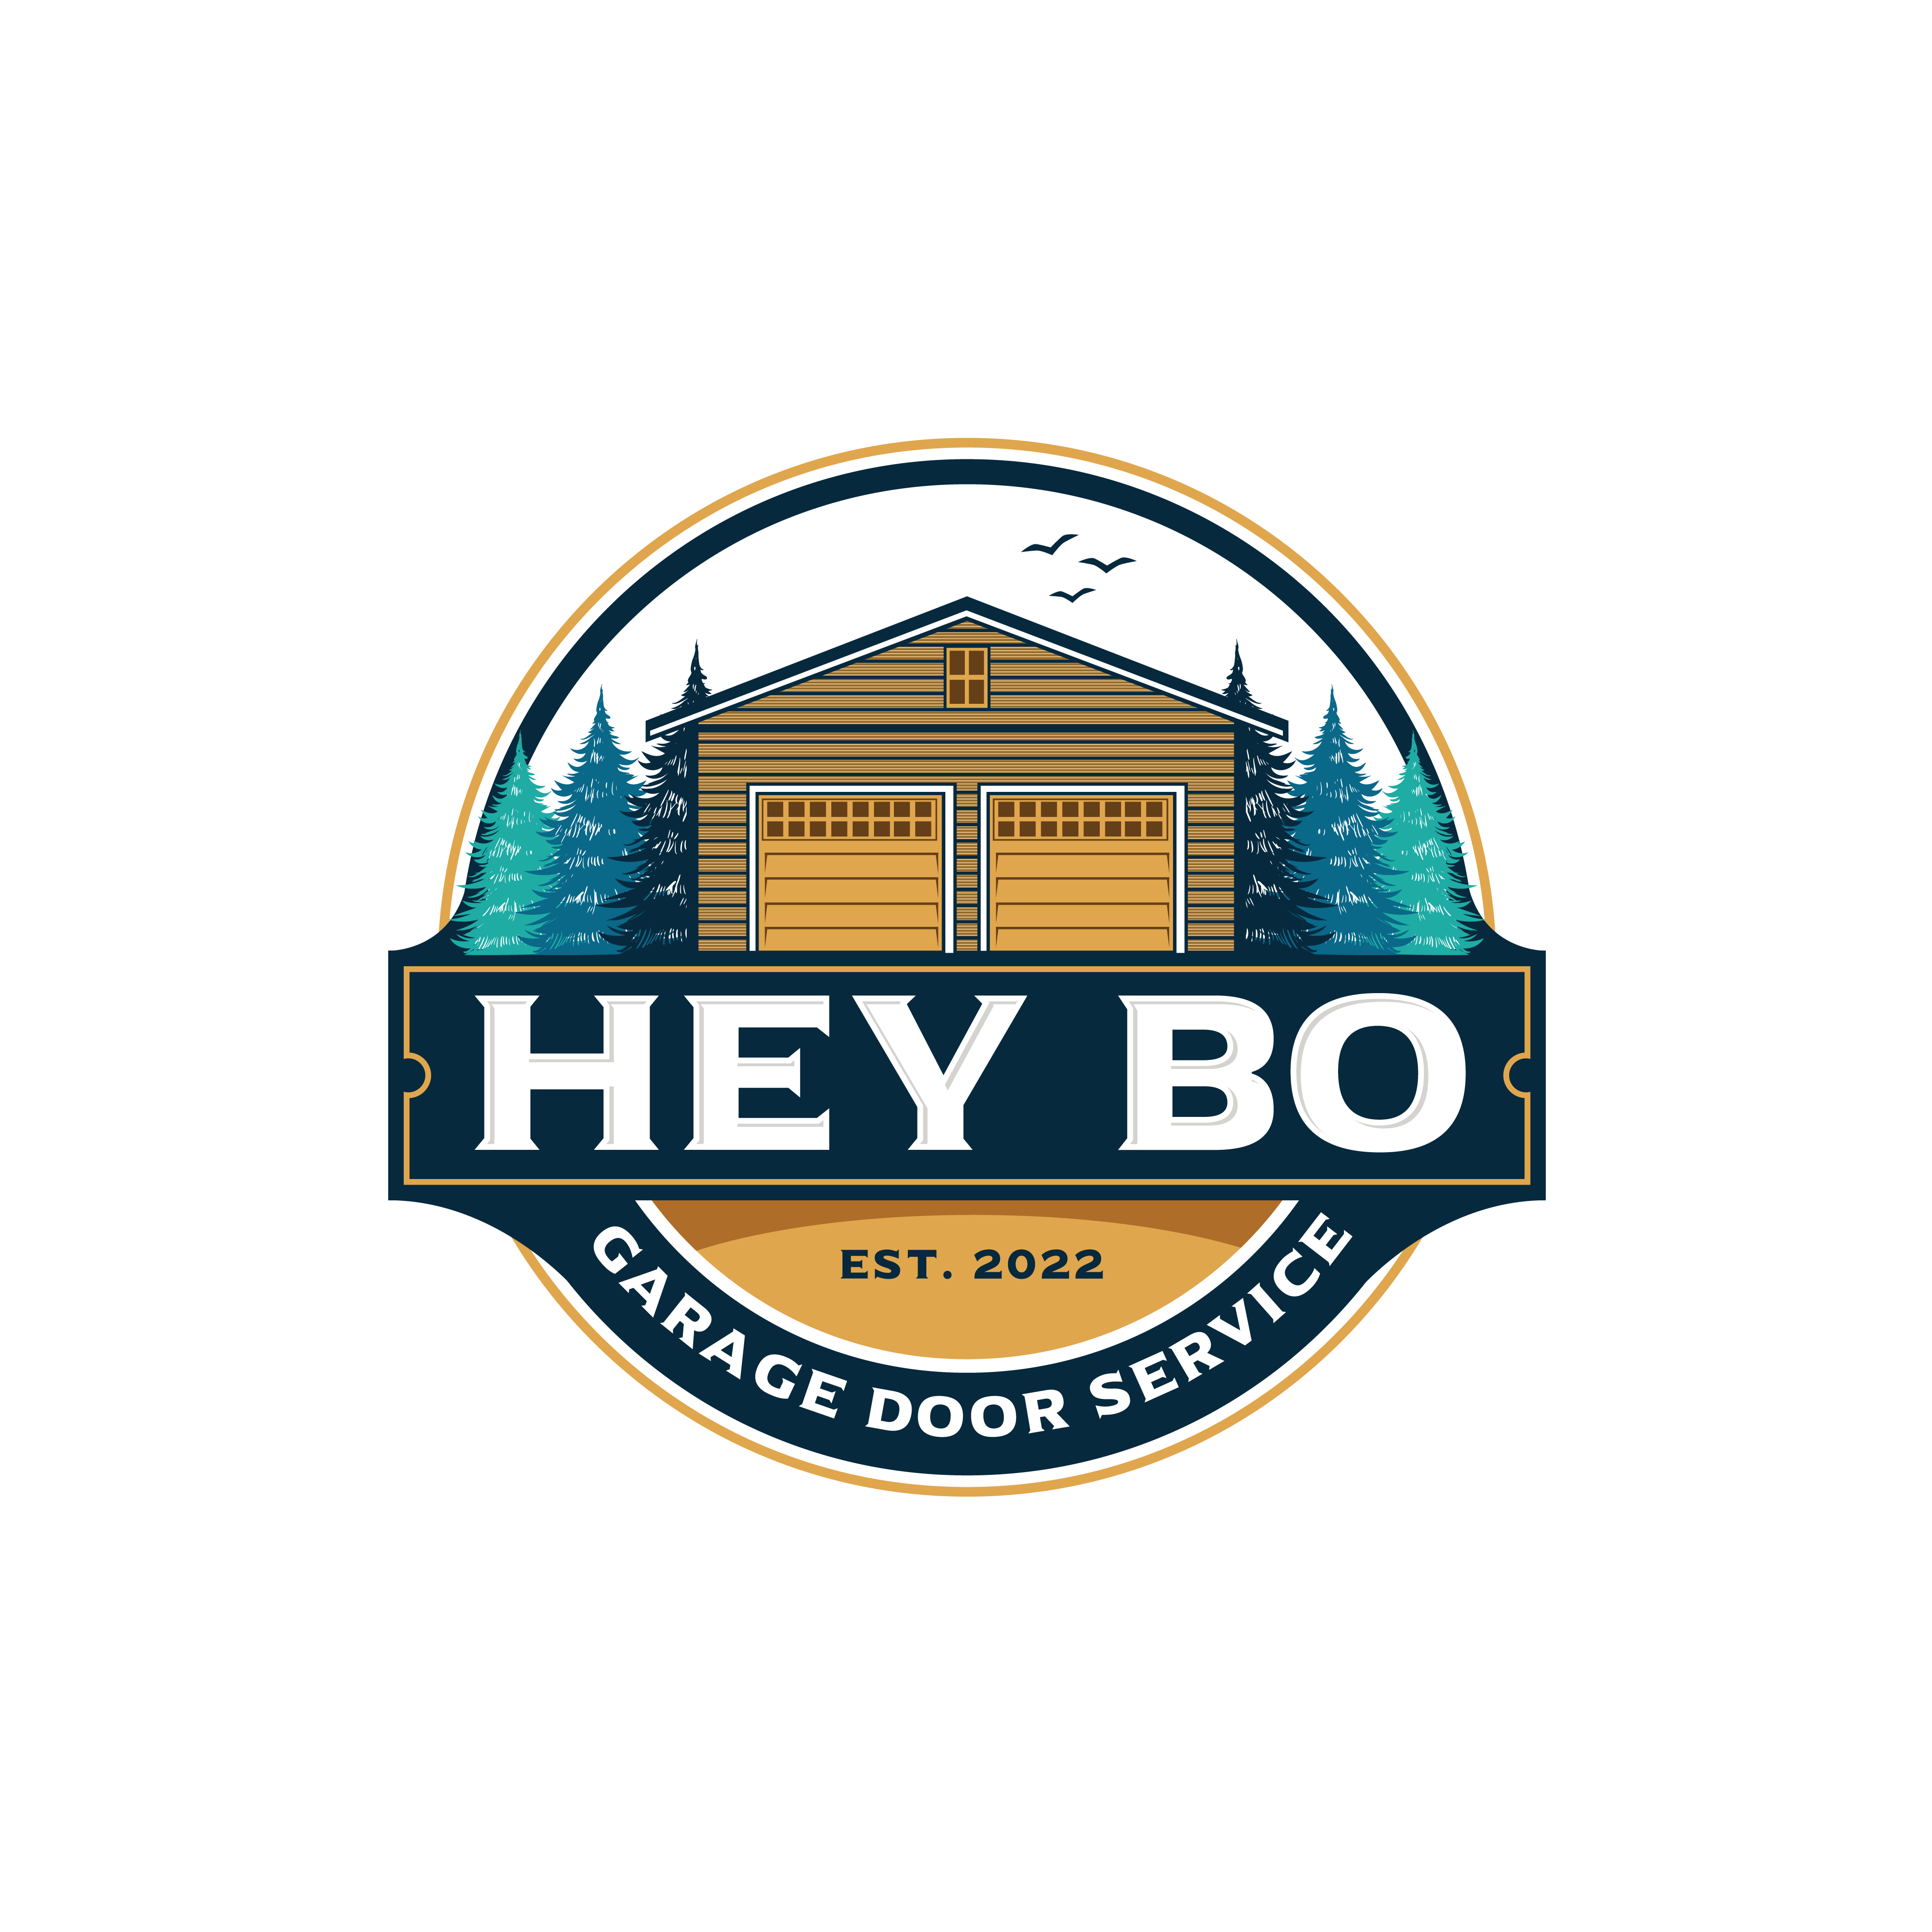 Hey Bo Garage Door Service Logo